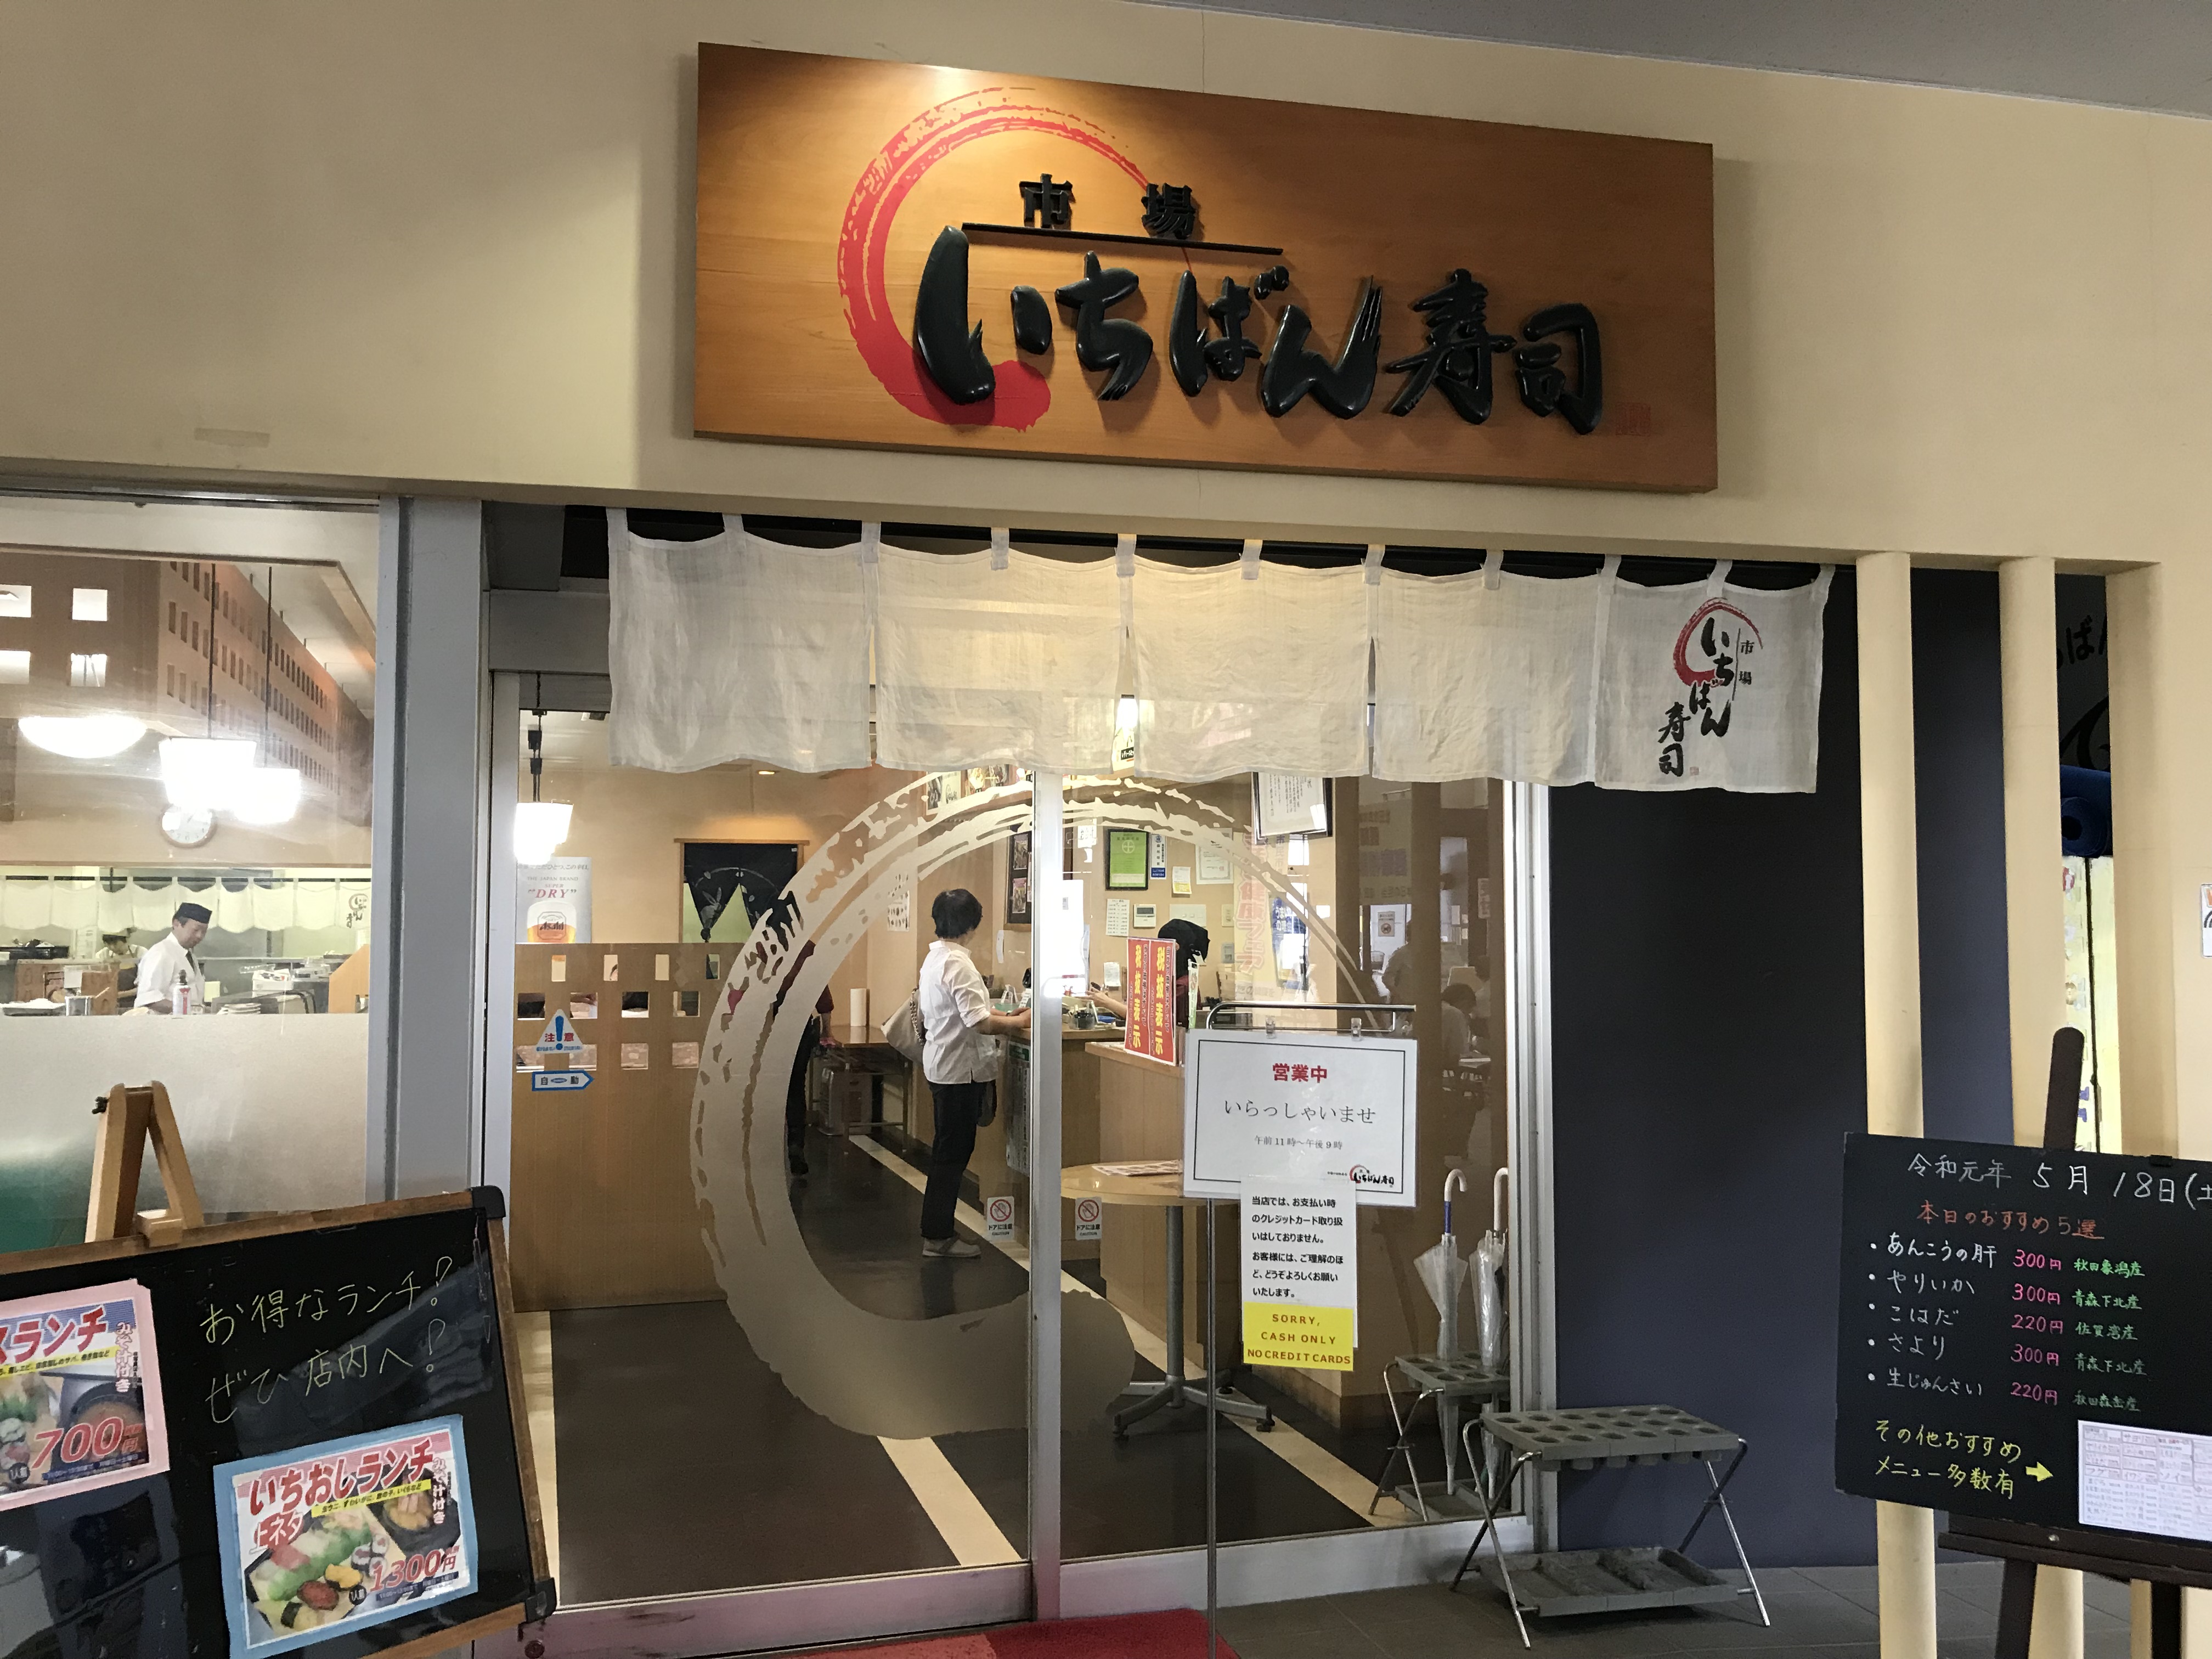 本当にうまい回転寿司屋は秋田にある 秋田市民市場内にある回転寿司 市場いちばん寿司 Gotrip 明日 旅に行きたくなるメディア